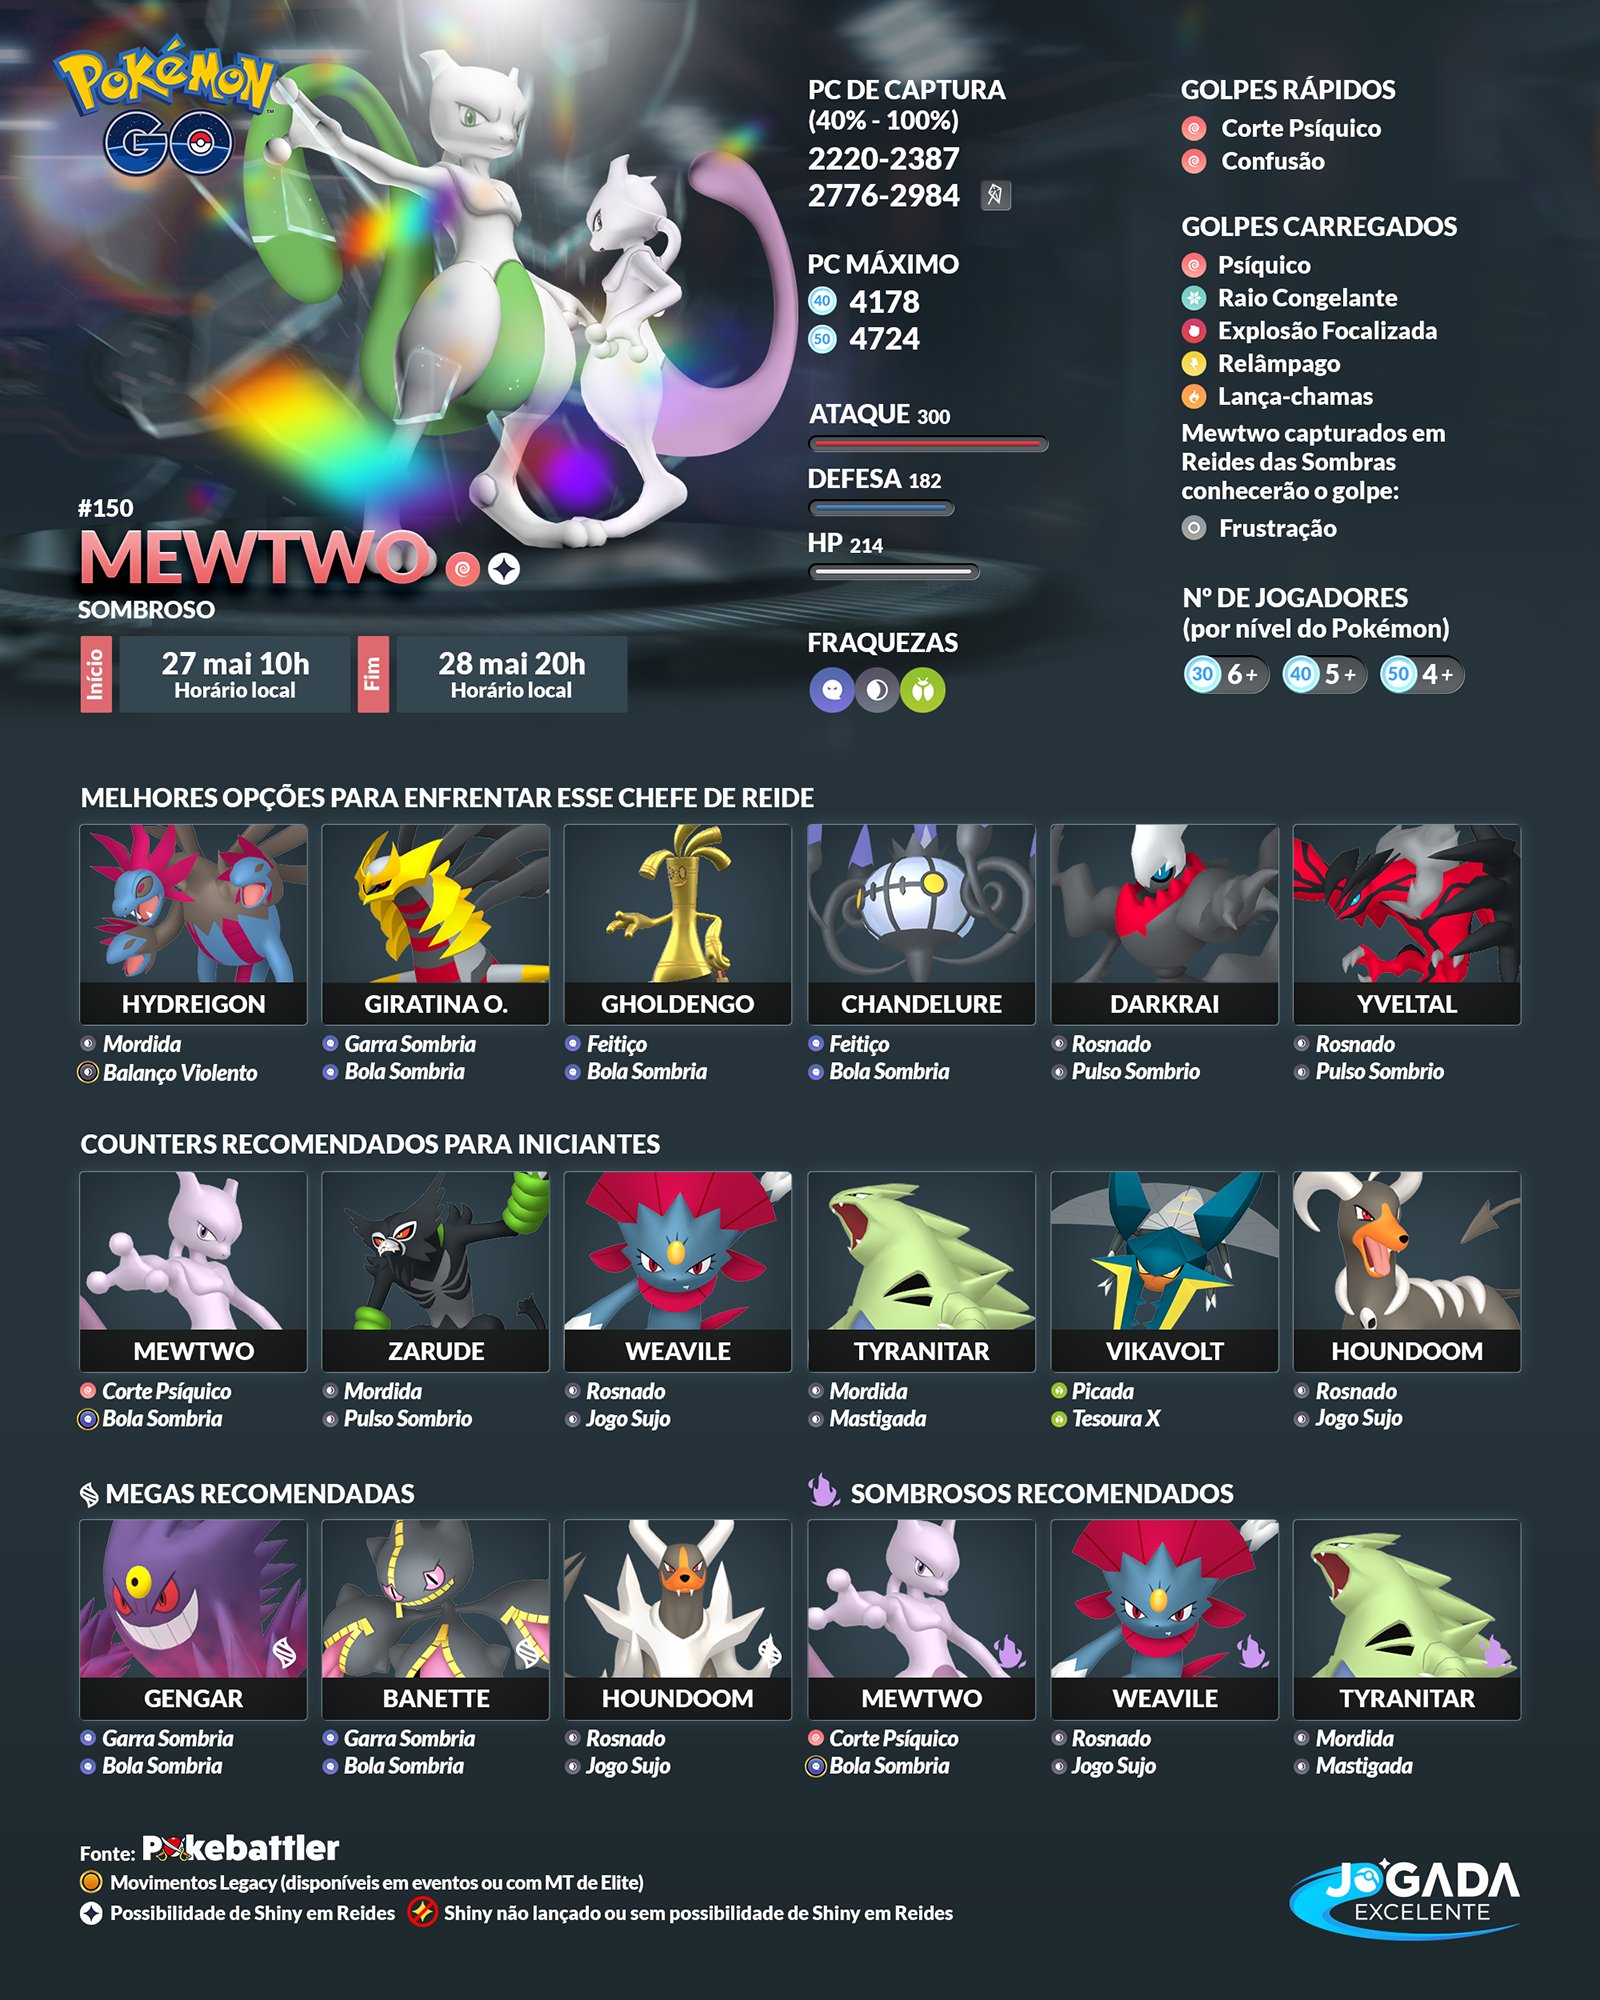 150 Mewtwo - Pokémon GO - Pokéxperto